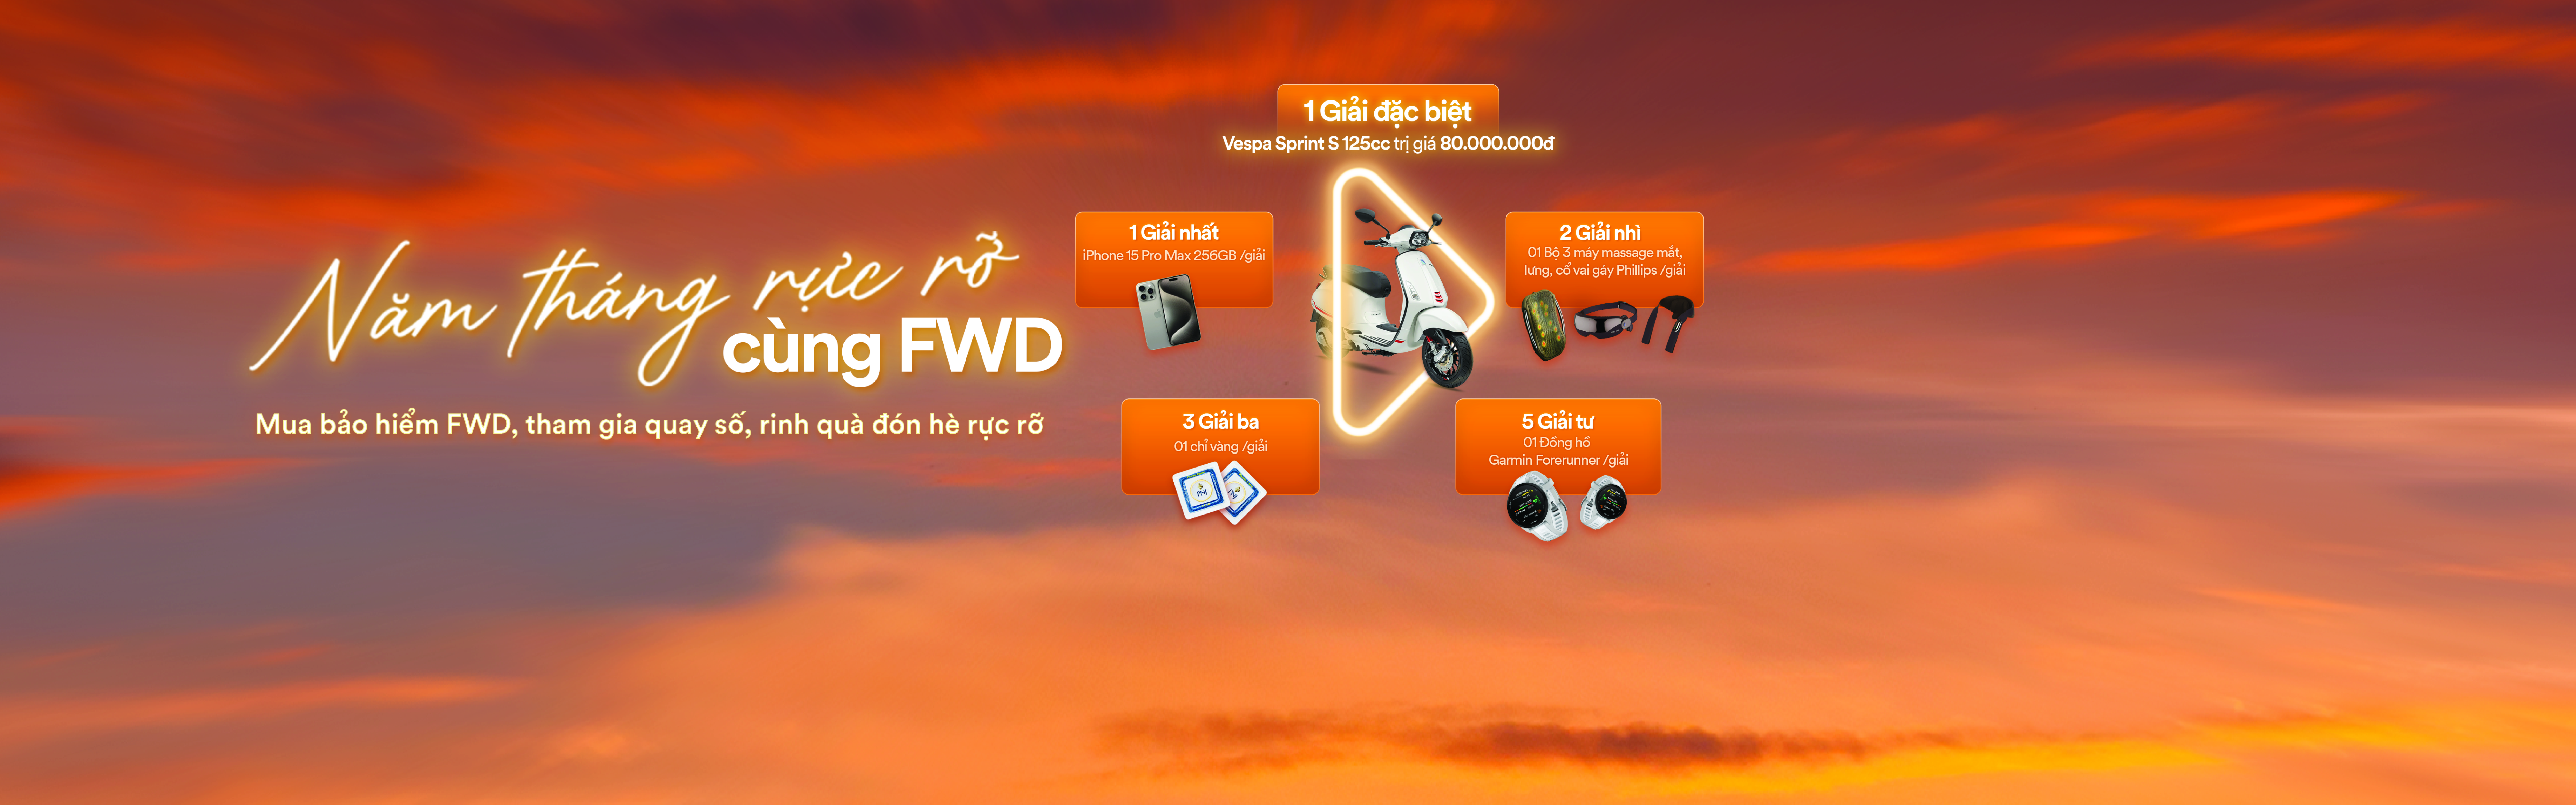 Mua Bảo hiểm tai nạn online dễ dàng với FWD!